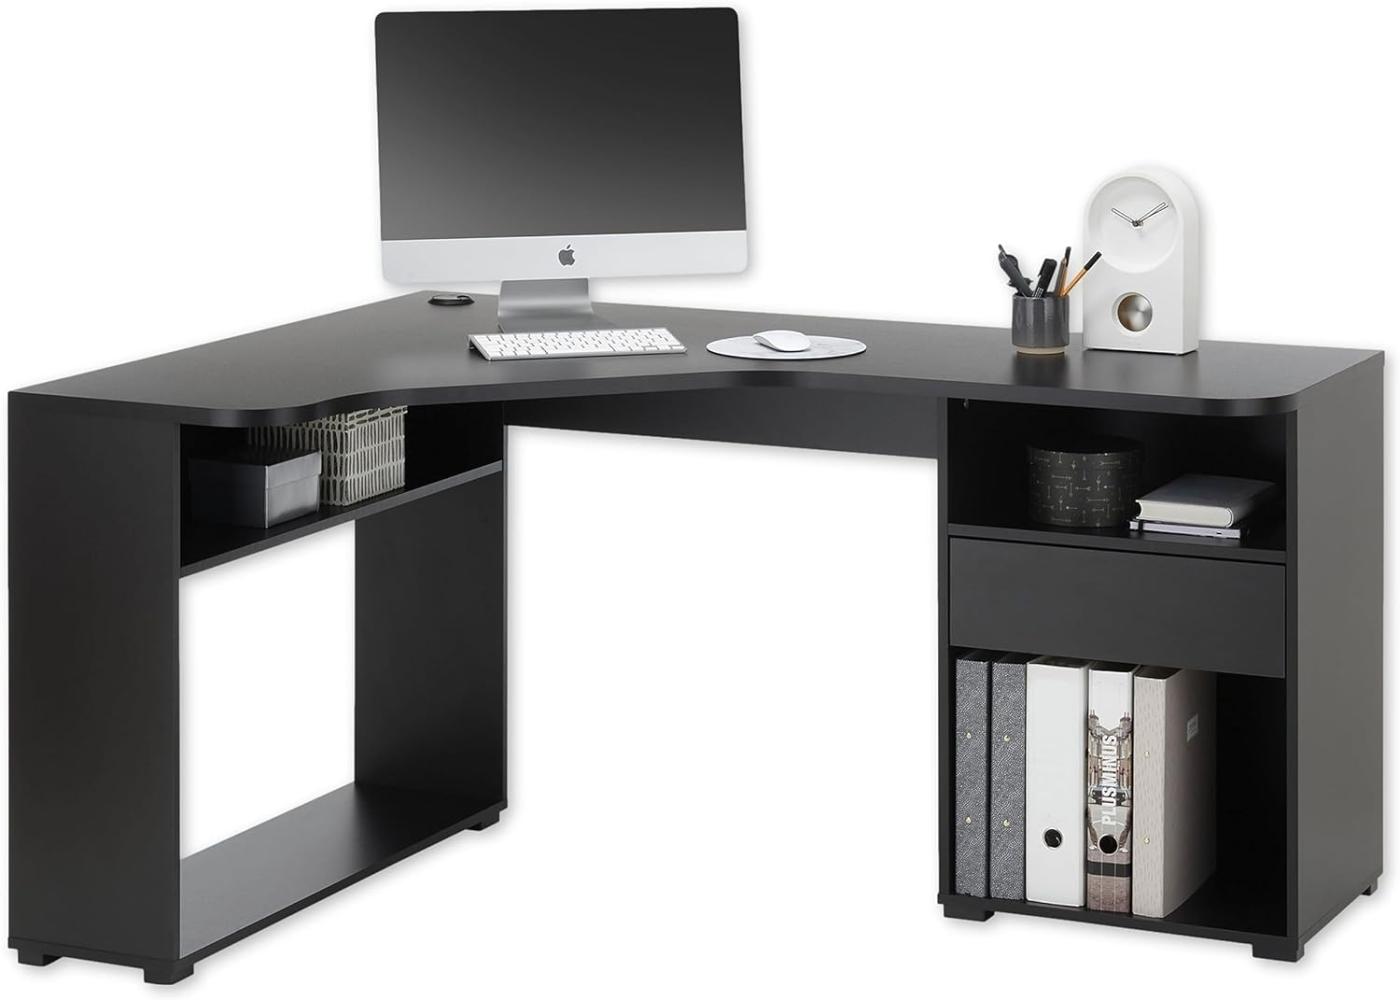 BC 3155 Eckschreibtisch in Schwarz - Moderner Bürotisch Computertisch mit großer Arbeitsfläche und viel Stauraum - 150 x 74 x 50 cm (B/H/T) Bild 1